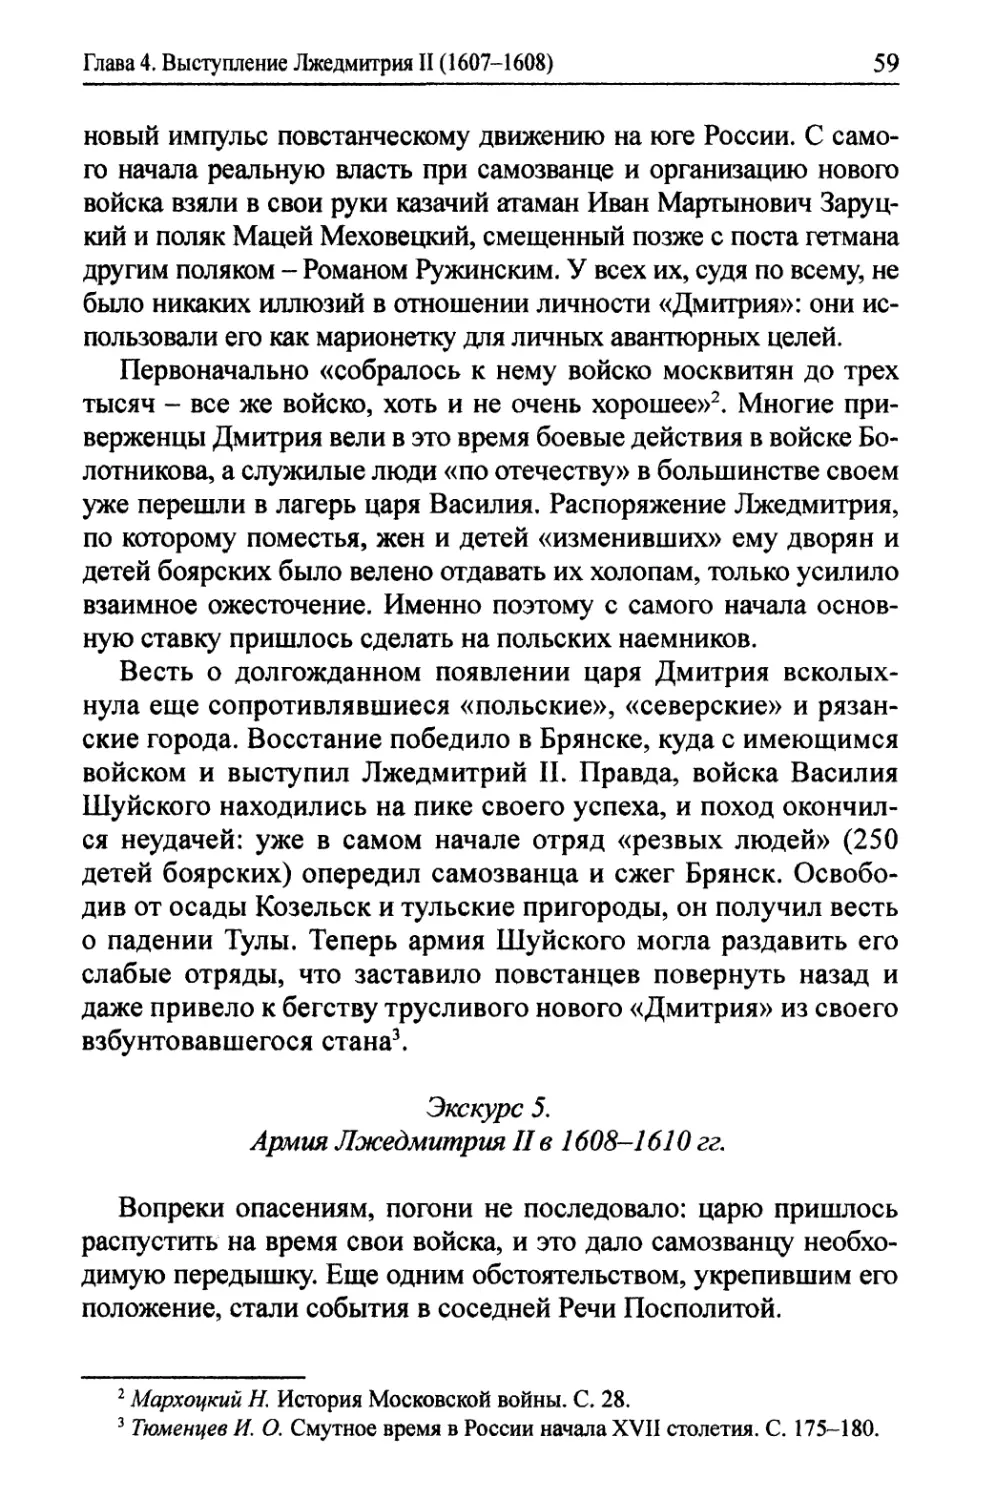 Экскурс 5. Армия Лжедмитрия II в 1608-1610 гг